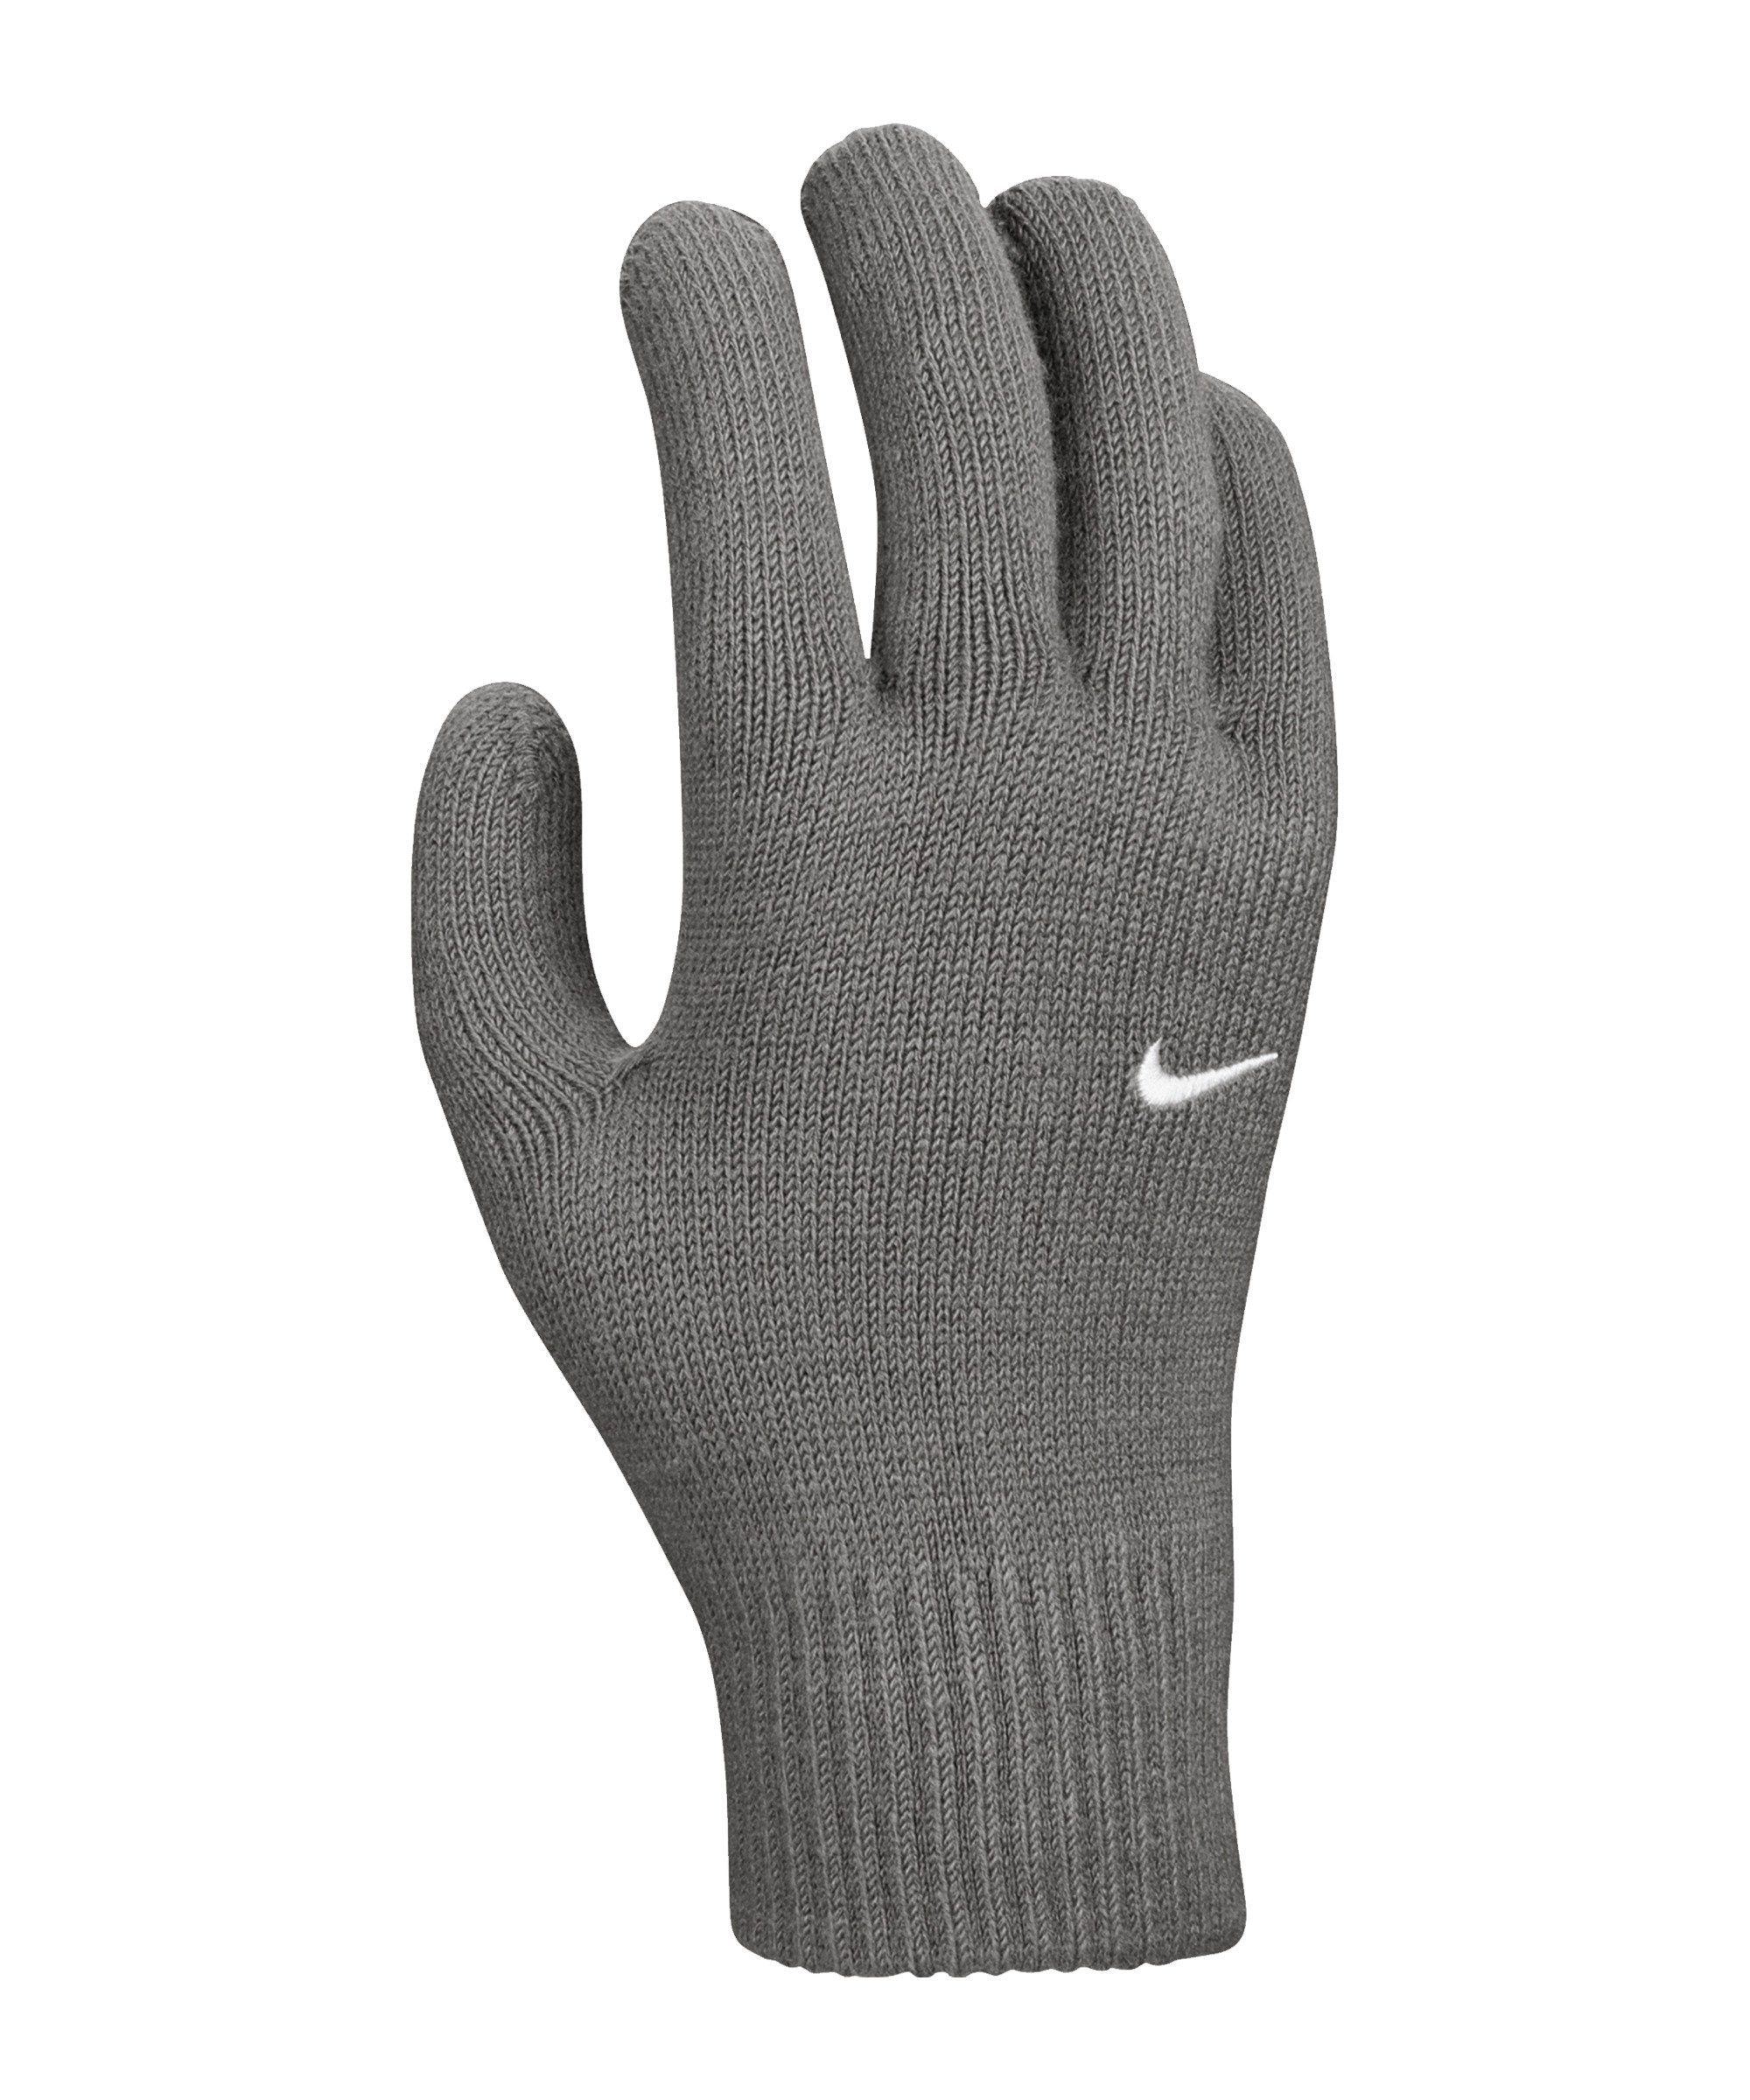 2.0 Spielerhandschuhe Feldspielerhandschuhe grauweiss Swoosh Knit Nike